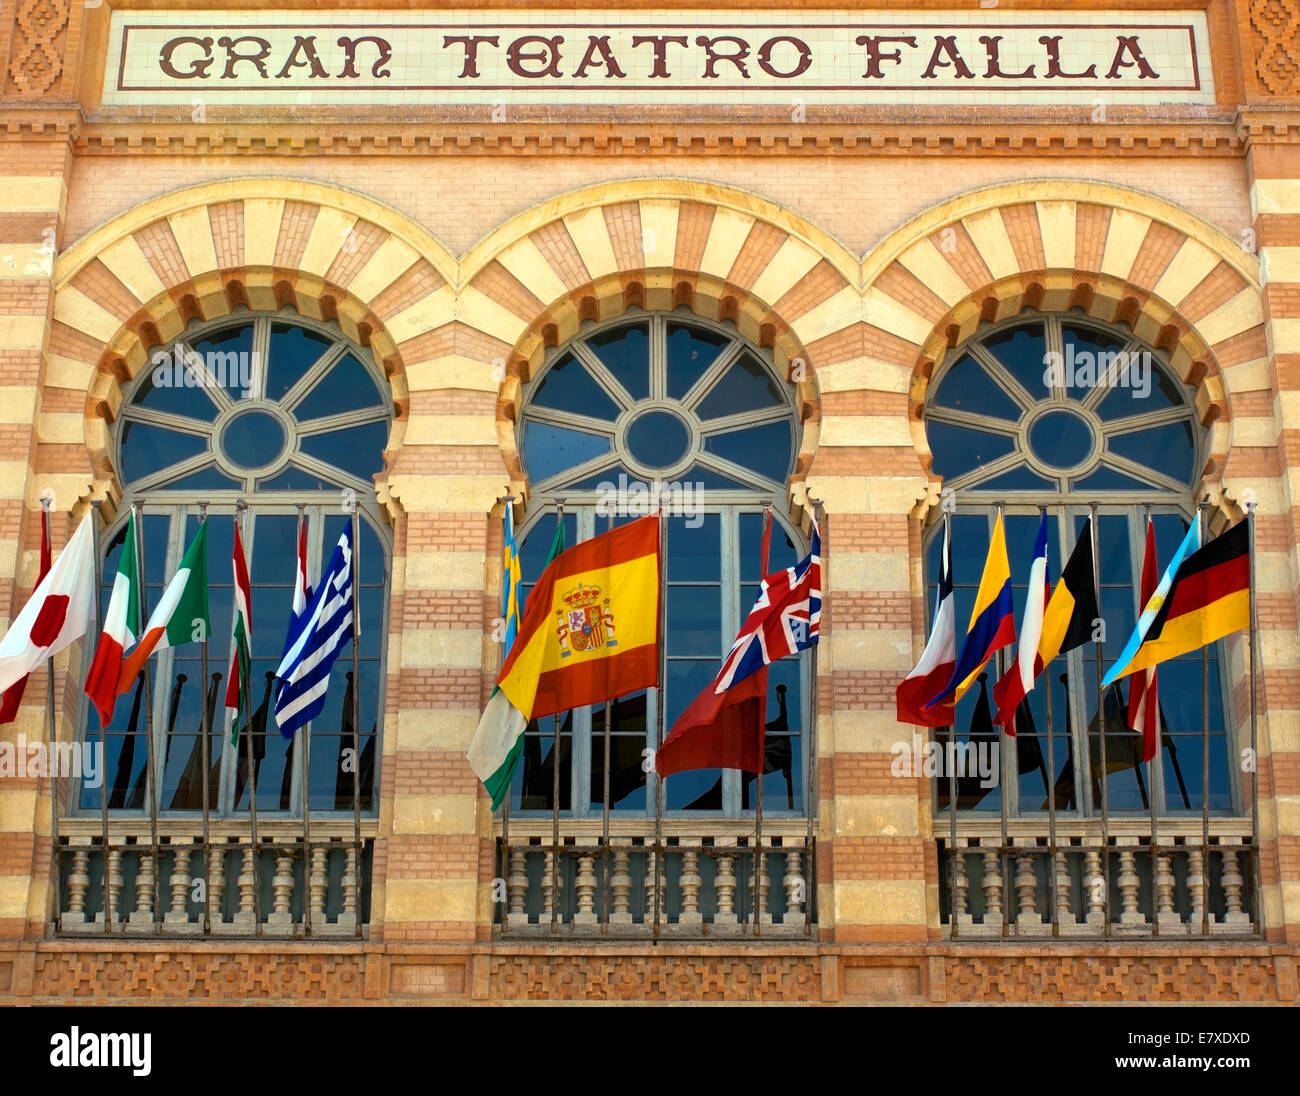 The theater called 'Gran Teatro Falla' in Cadiz Stock Photo